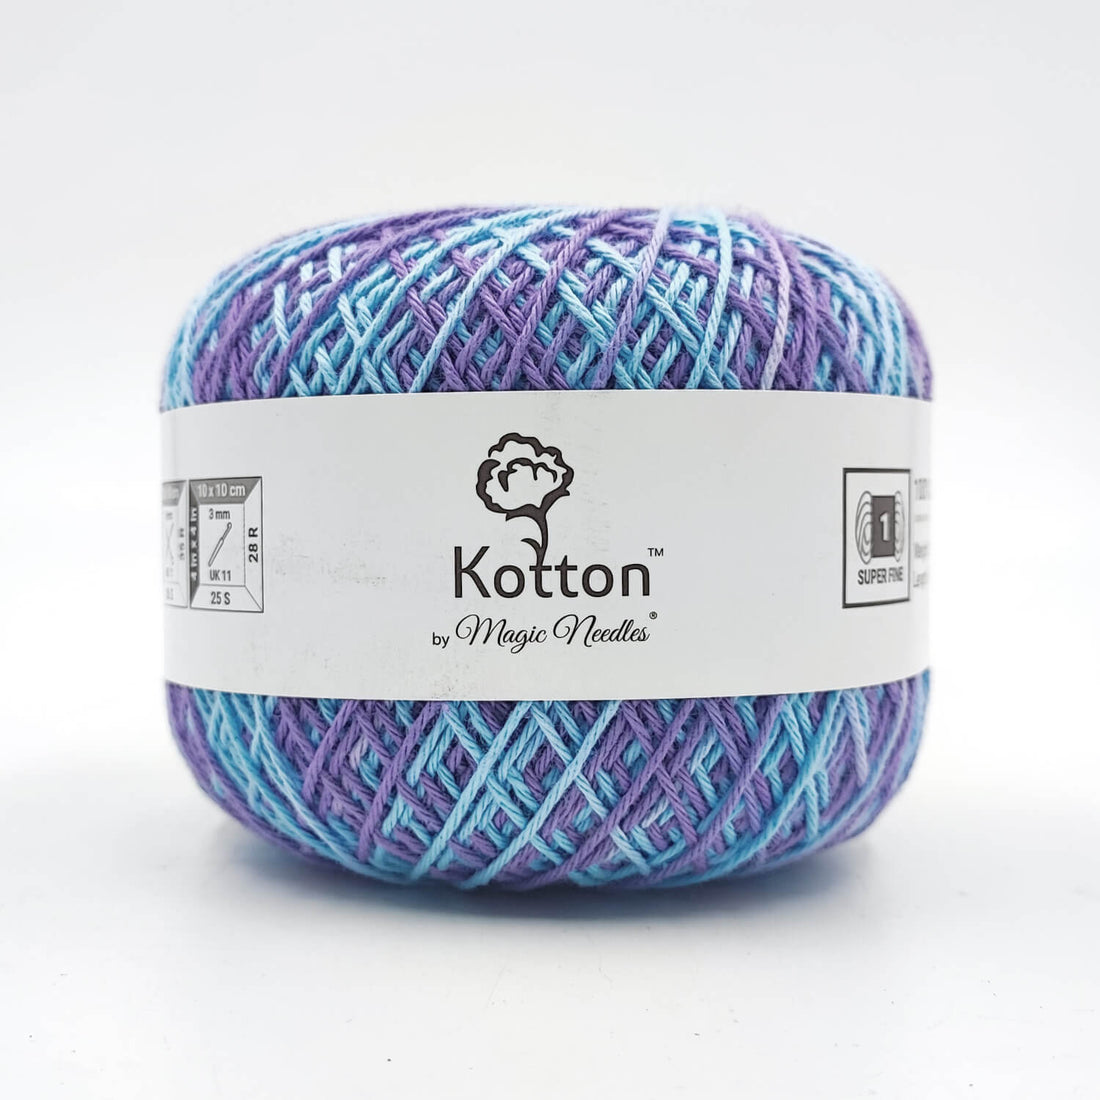 Kotton 4 ply Cotton Yarn 150 g - Multi Color 12